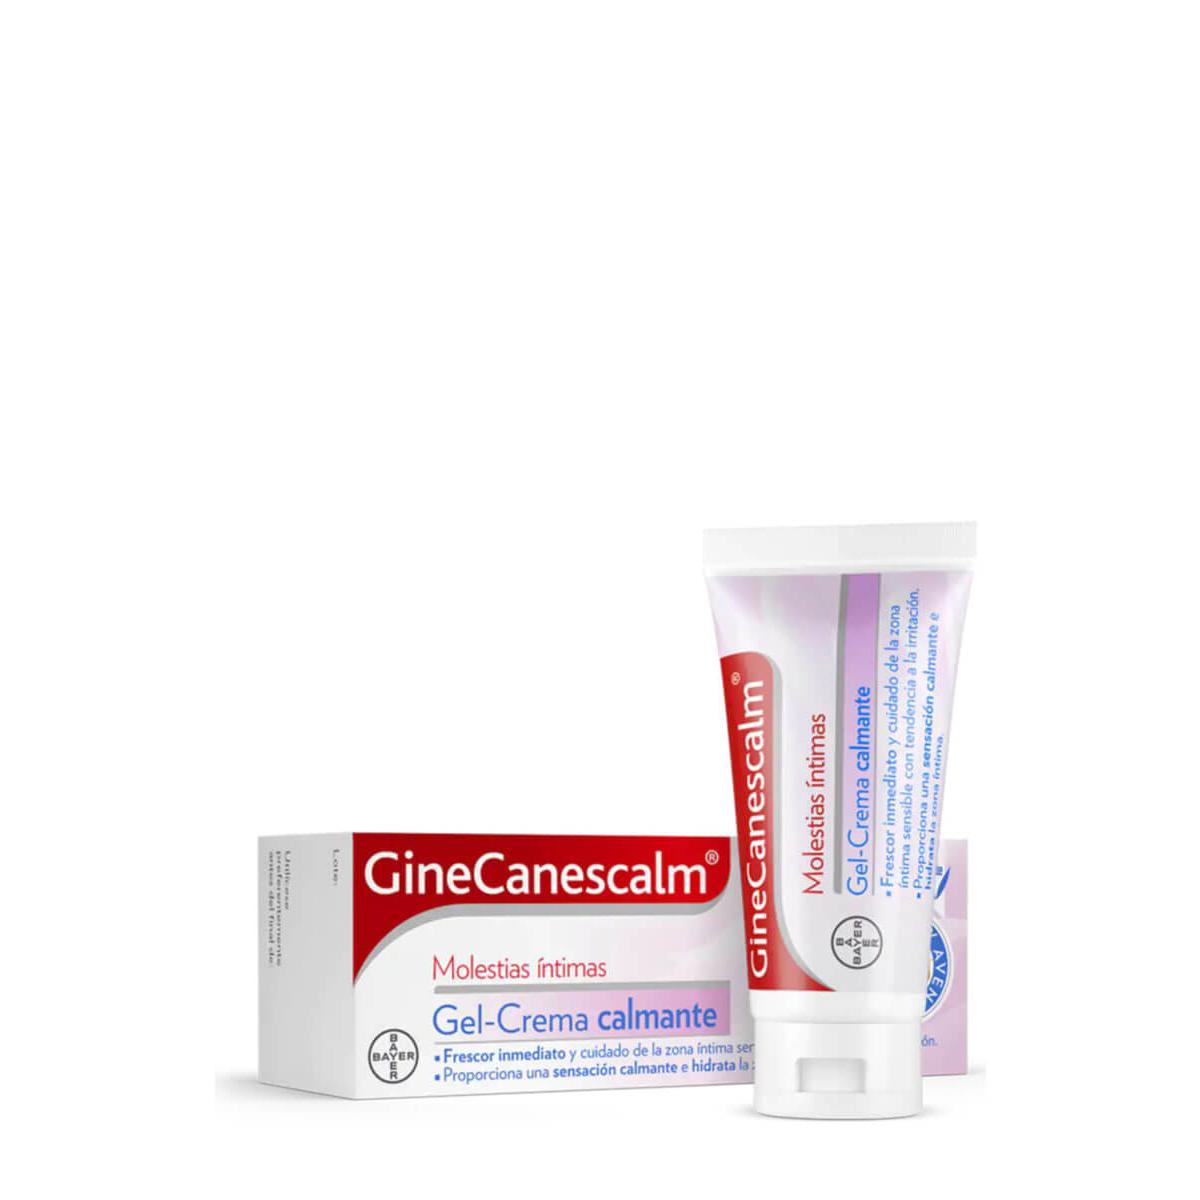 Ginecanesgel - Ginecanescalm gel crema calmante 15 gr